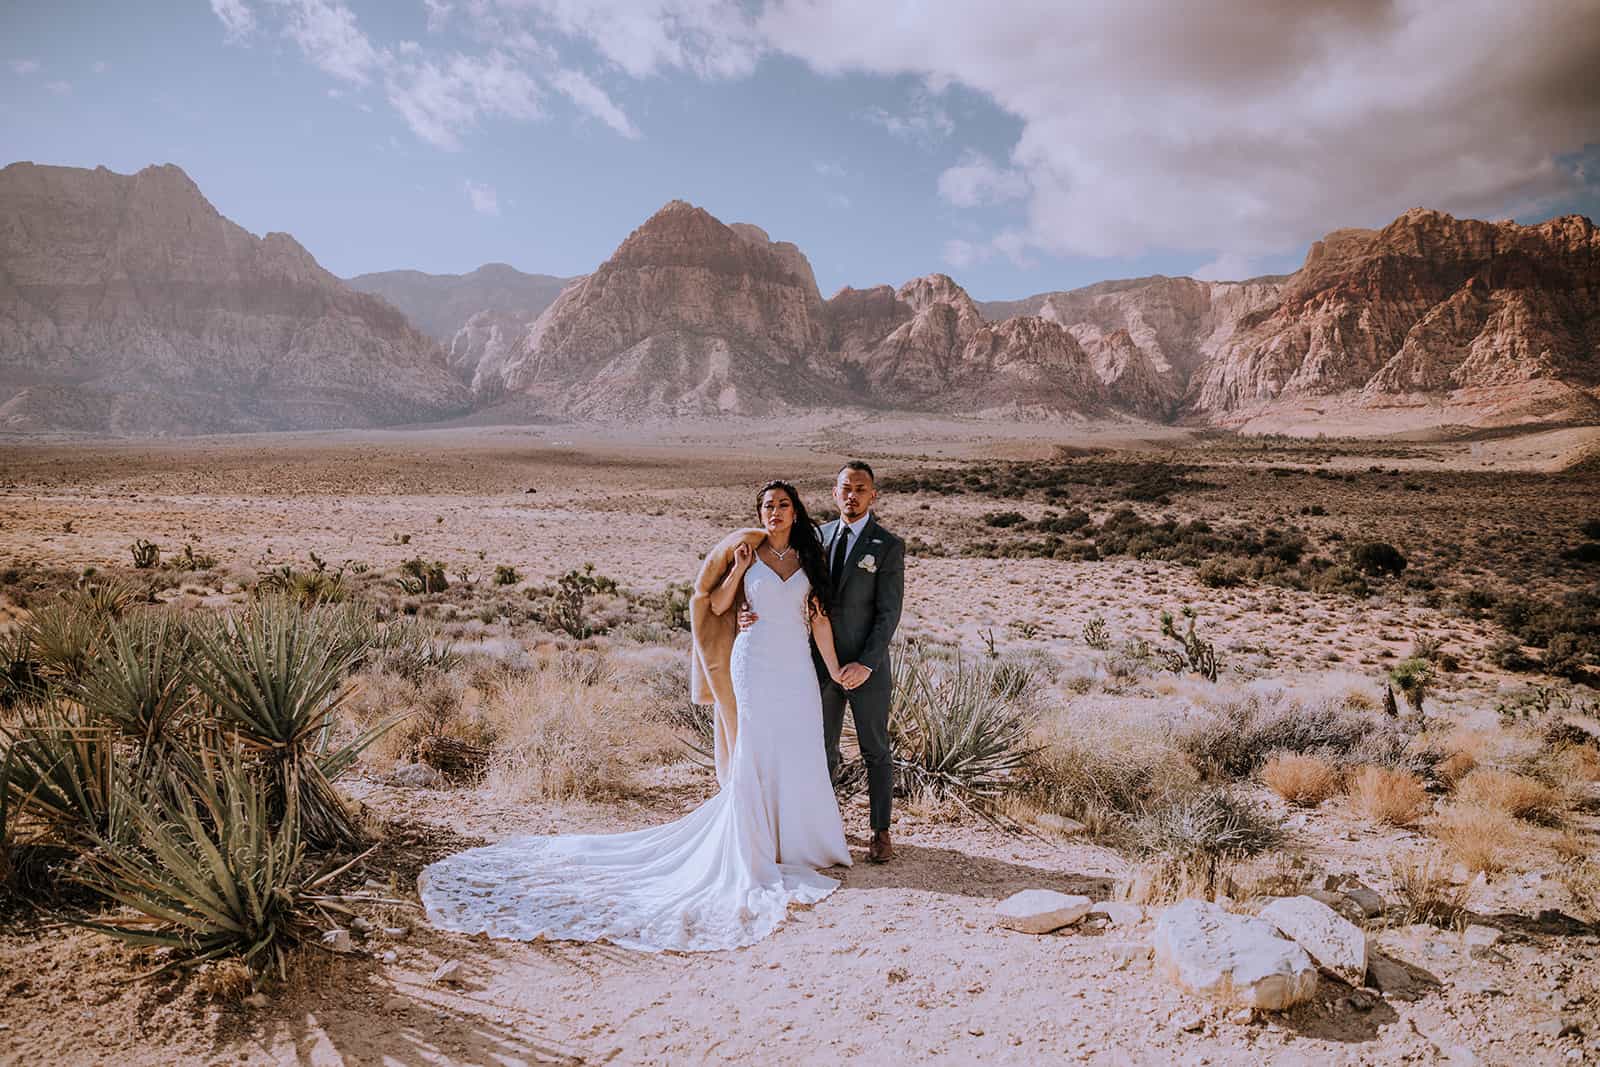 Adventure elopement in the Las Vegas desert